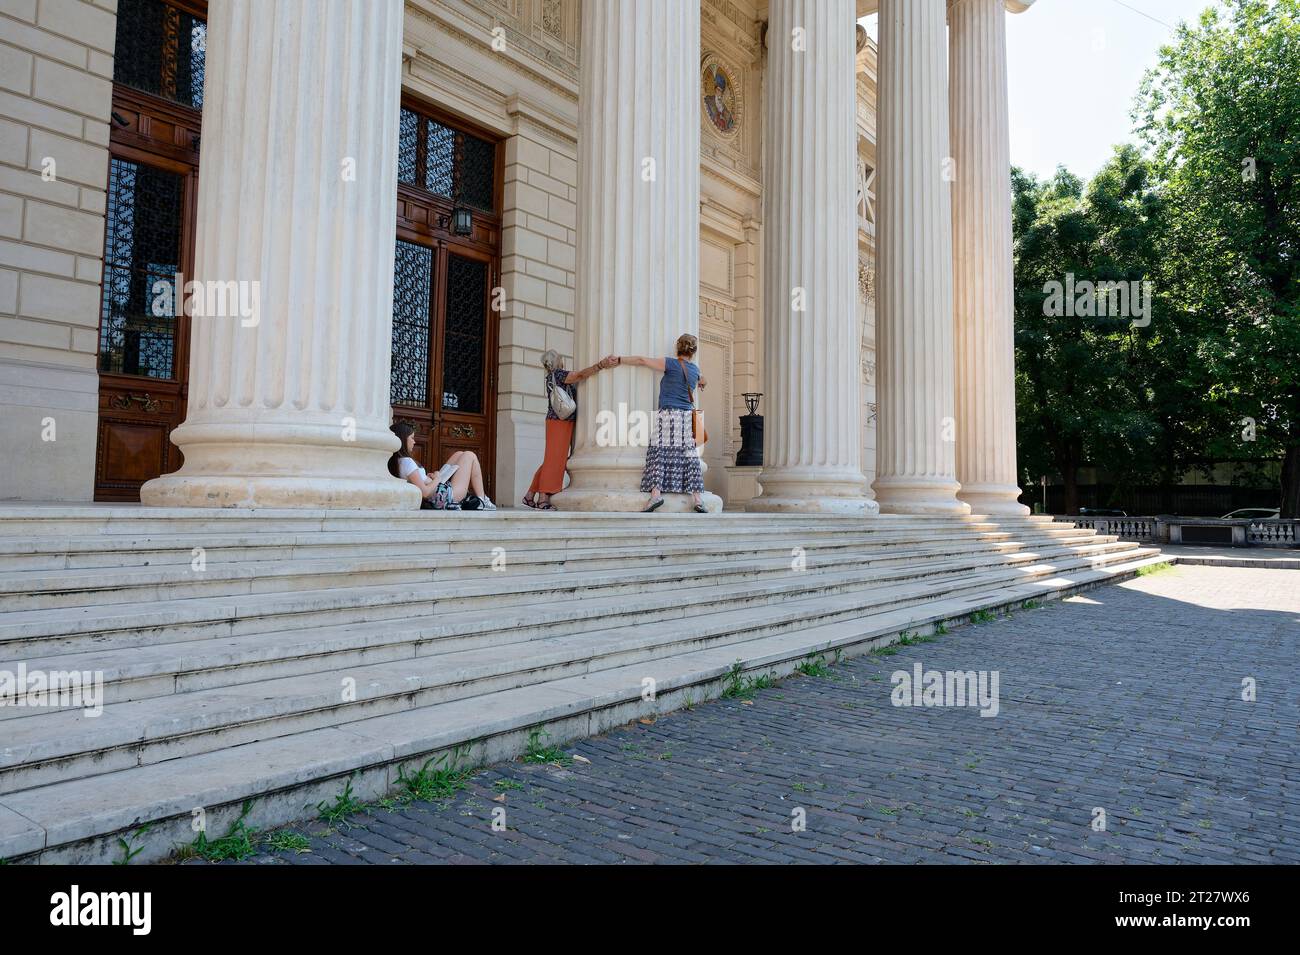 Les gens serrant un pilier dans l'athénée roumain, tandis qu'un adolescent est assis et lit Banque D'Images